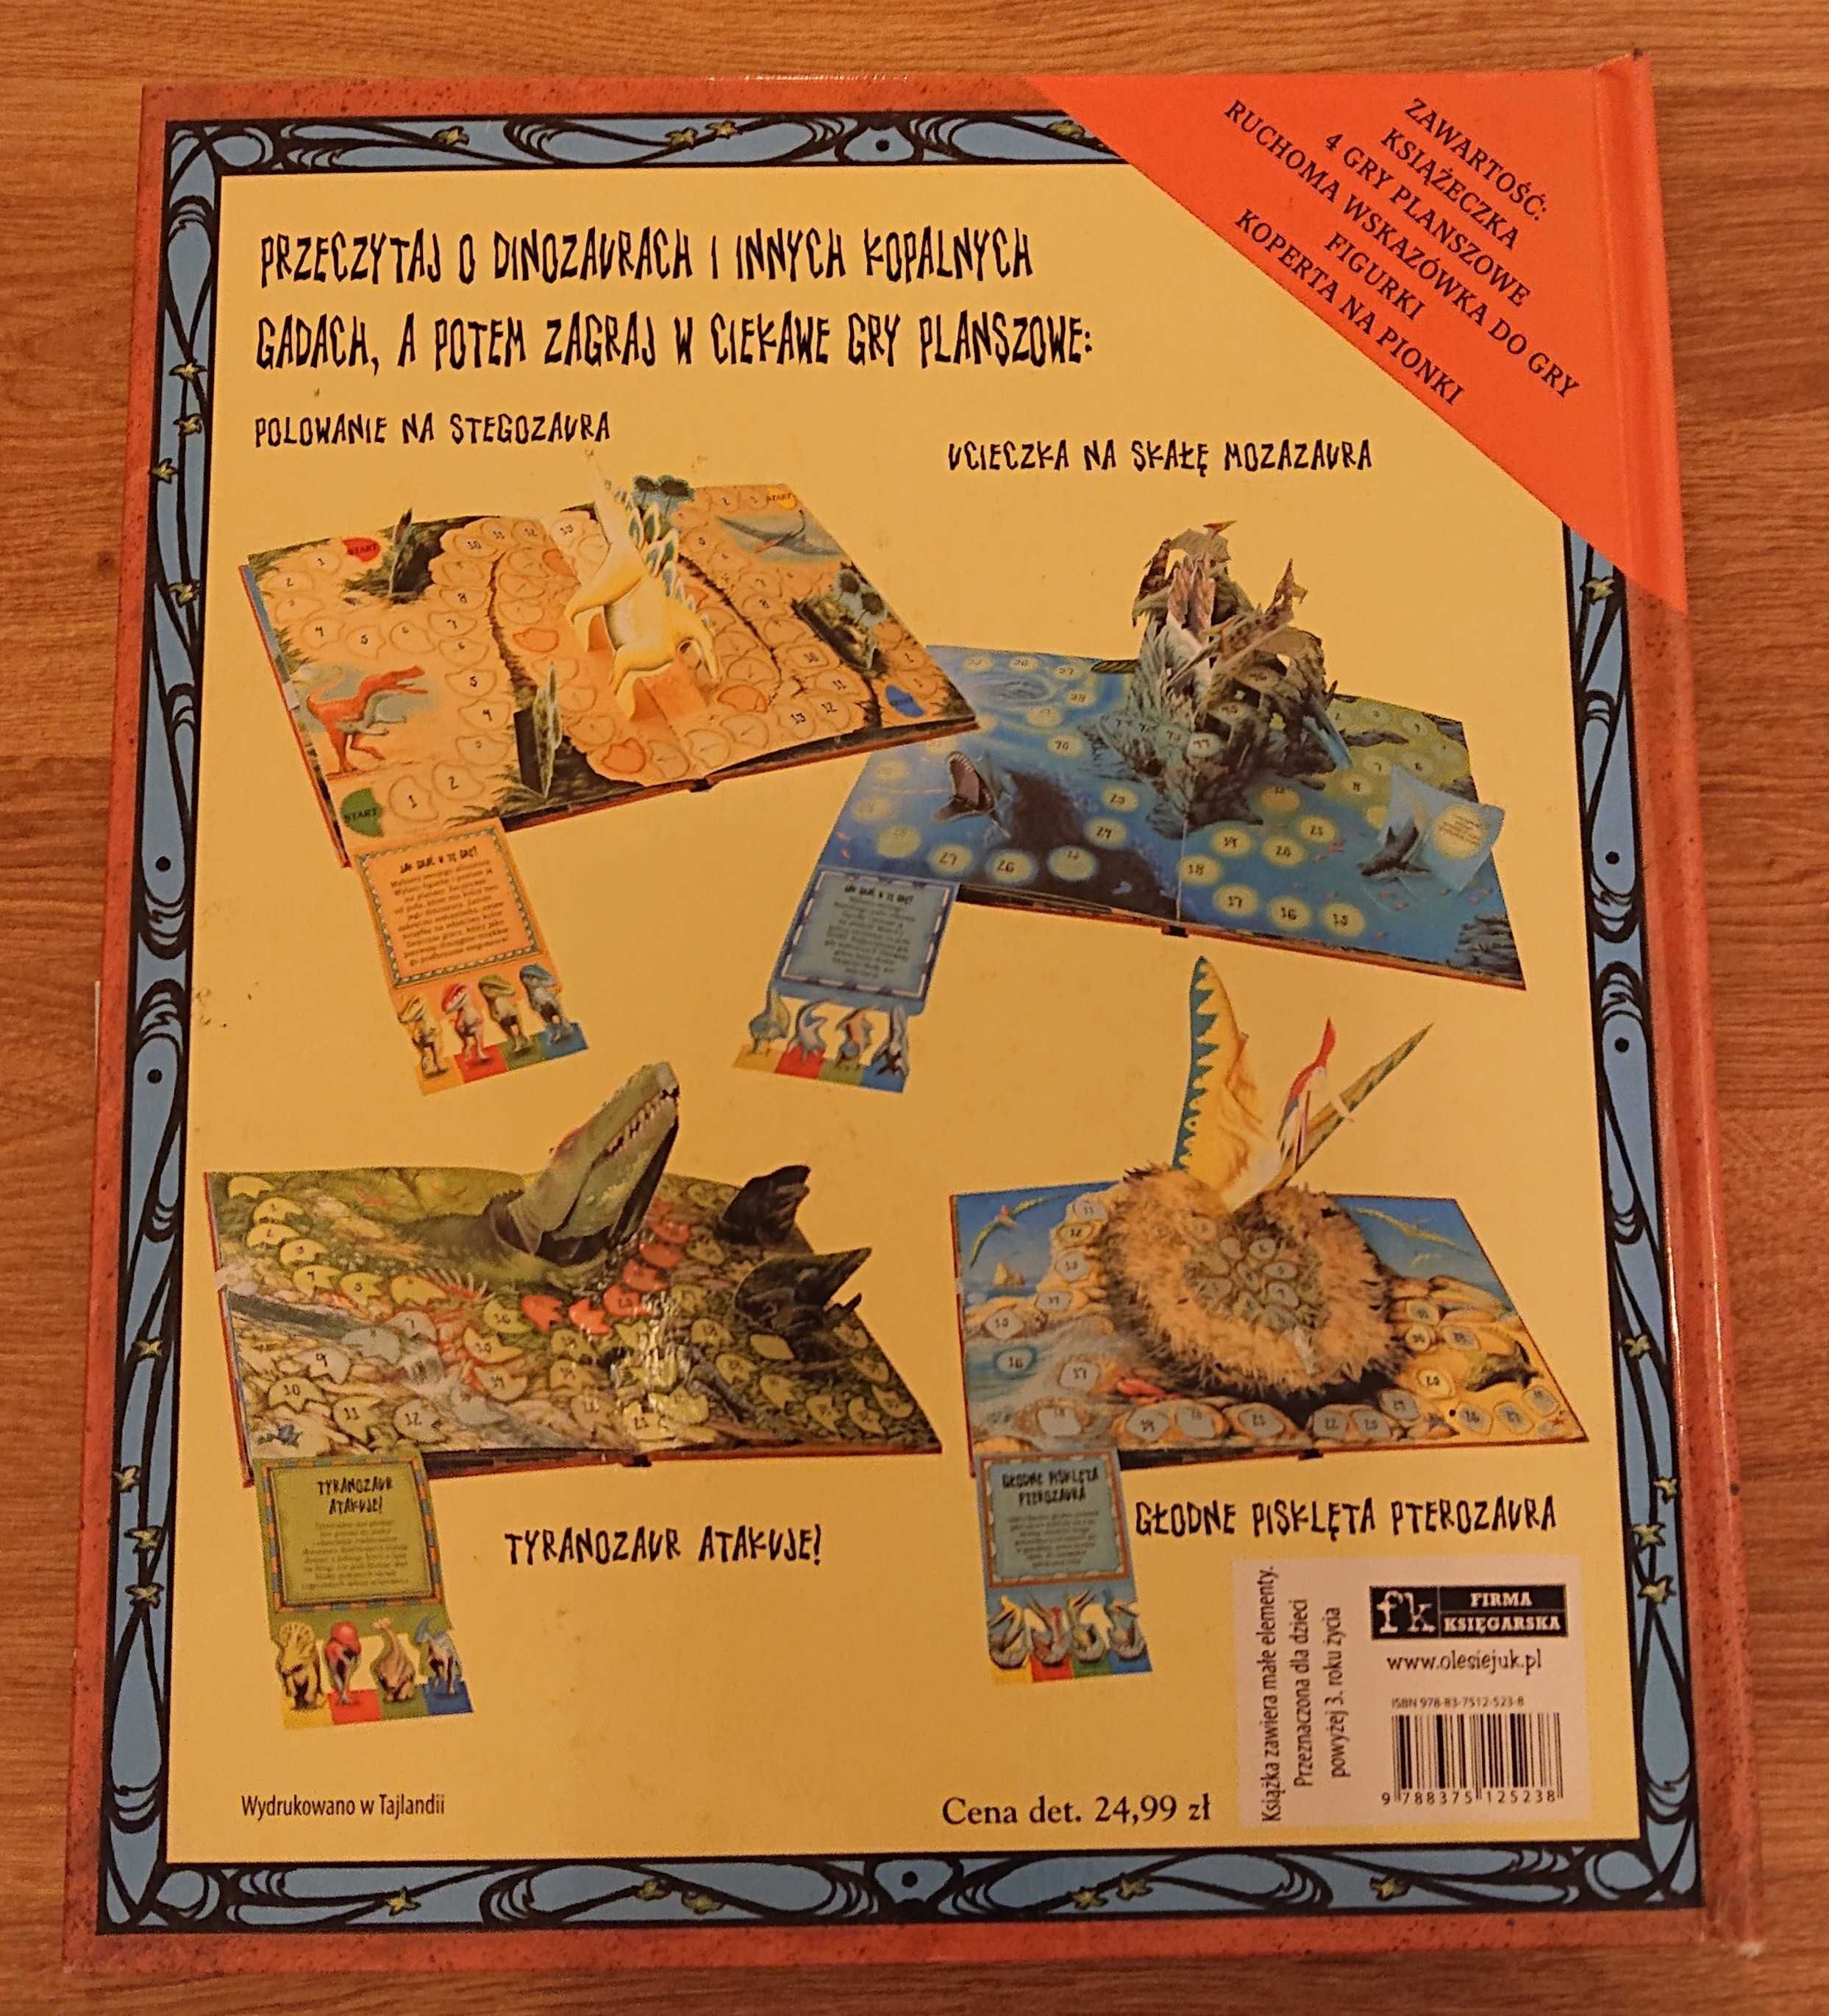 Księga prehistorycznych gier planszowych